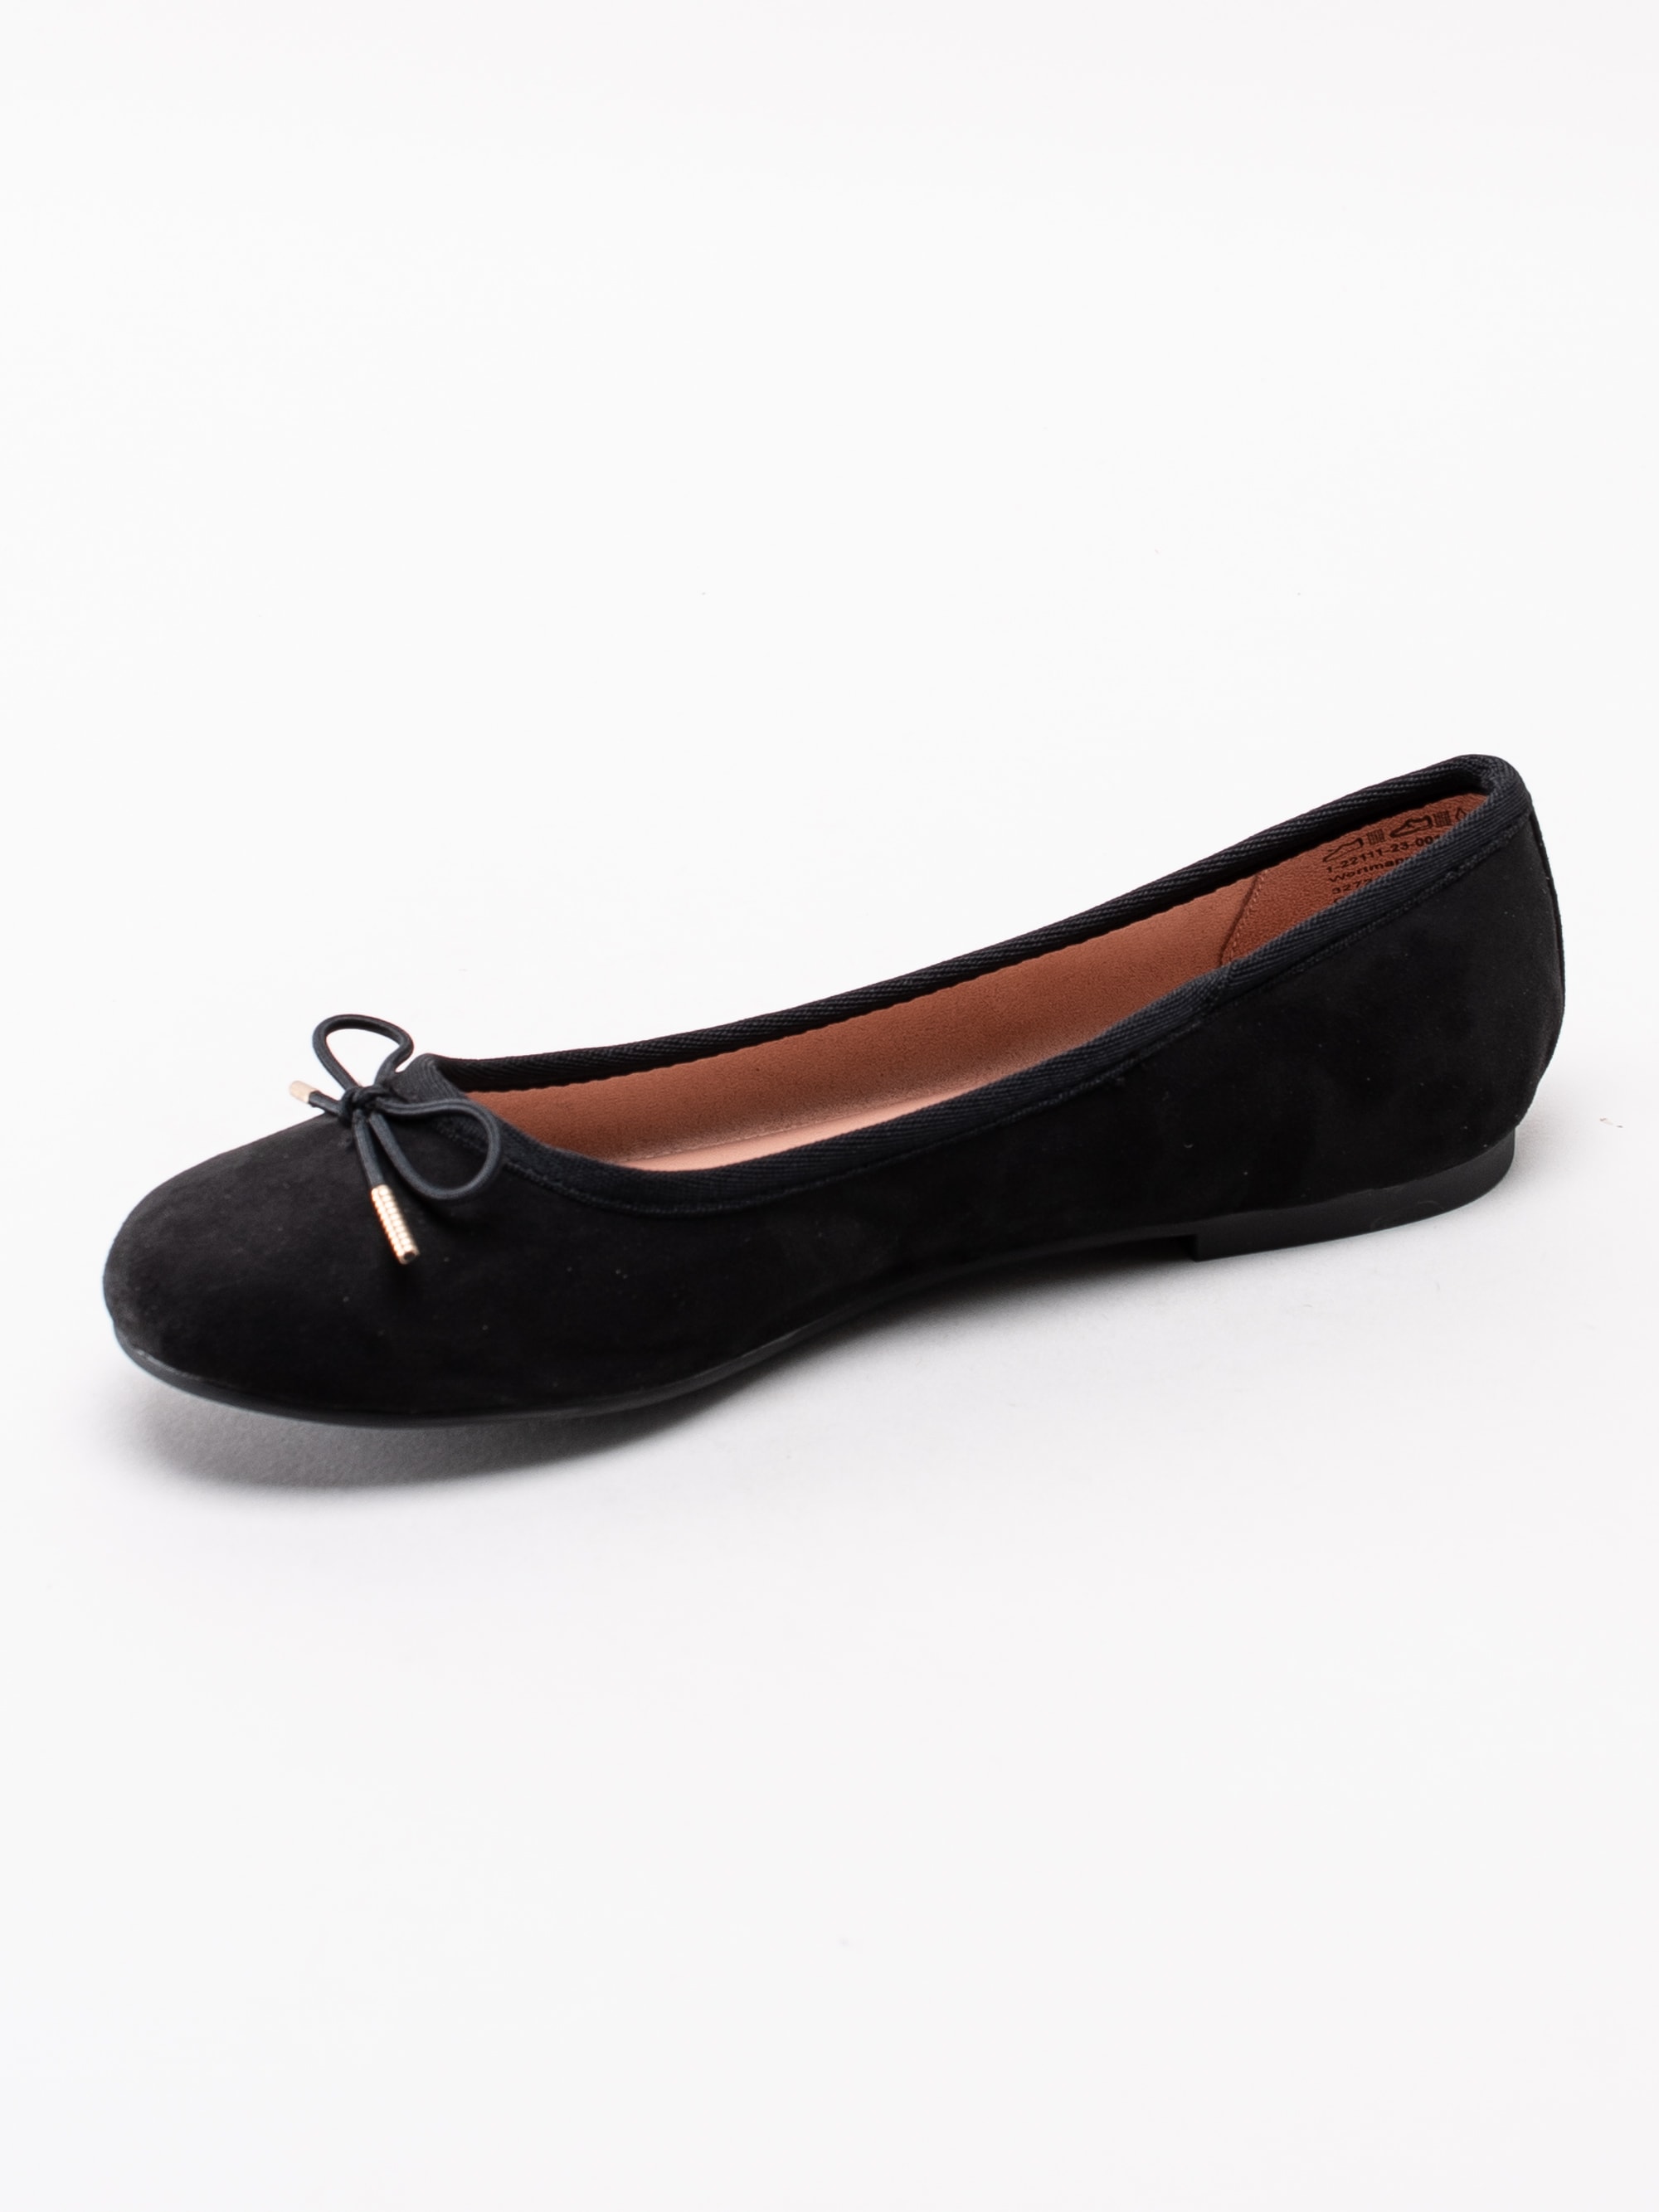 08193036 Tamaris 1-22111-23-001 svarta klassiska ballerina skor med rosett-2